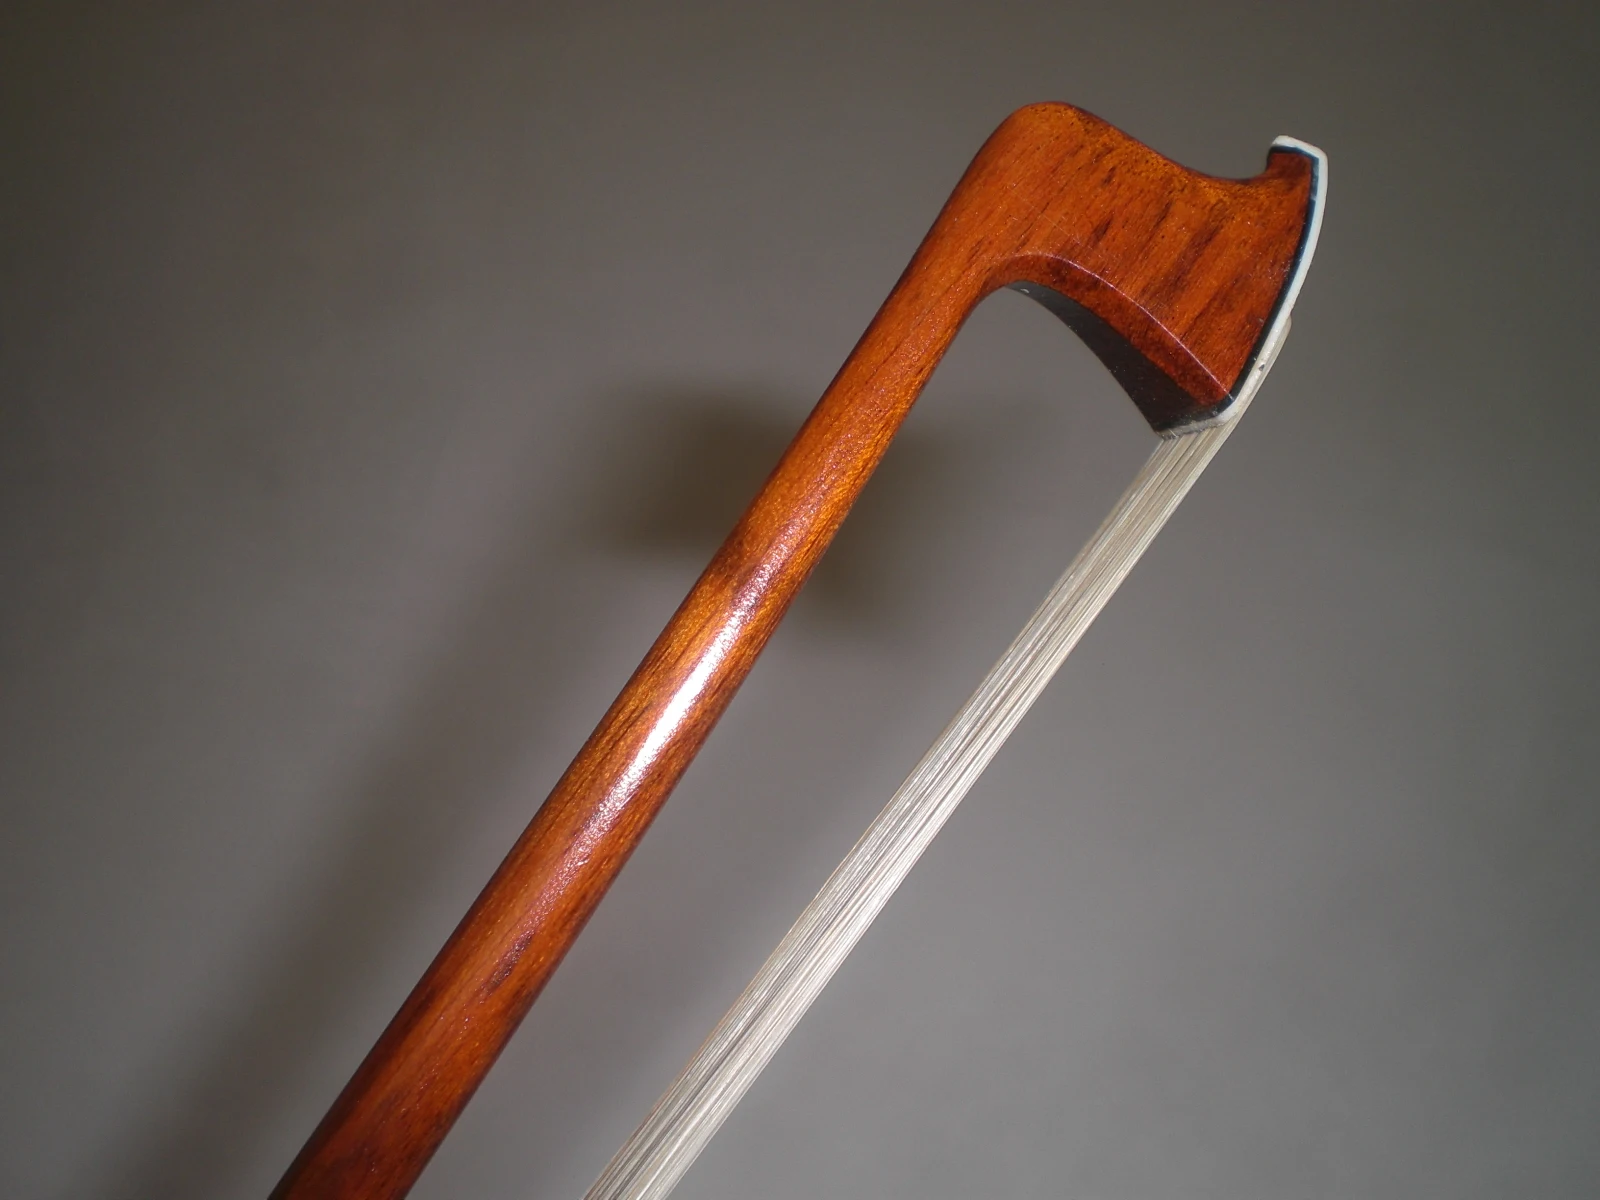 Струна для скрипки змея деревянный лук, эбеновая Лягушка Серебряная установленная струна для скрипки SFV88